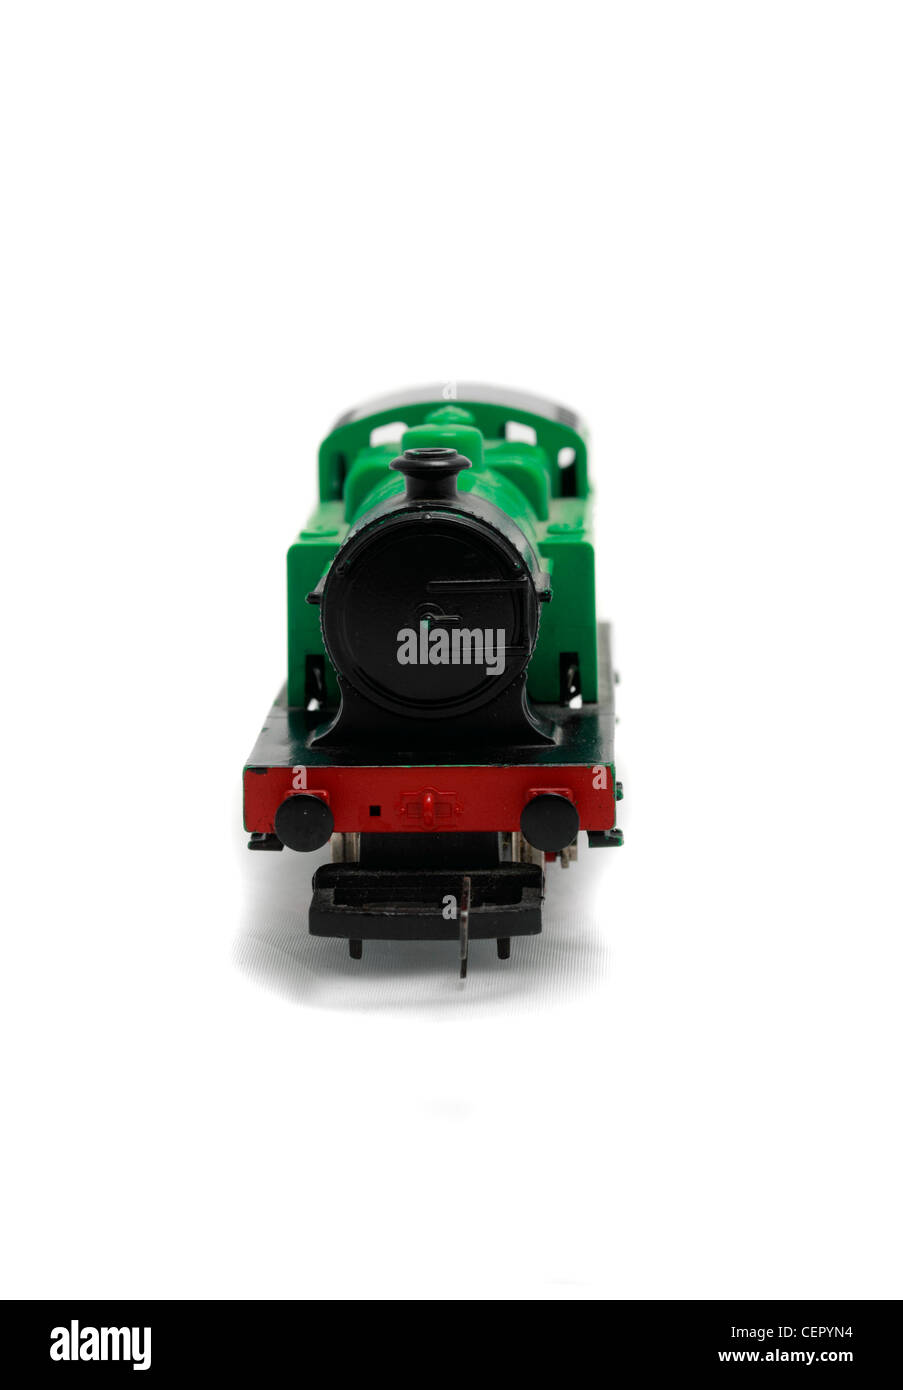 British Railways 0-4-0 locomotive à vapeur, trains Hornby 00 guage model train Banque D'Images